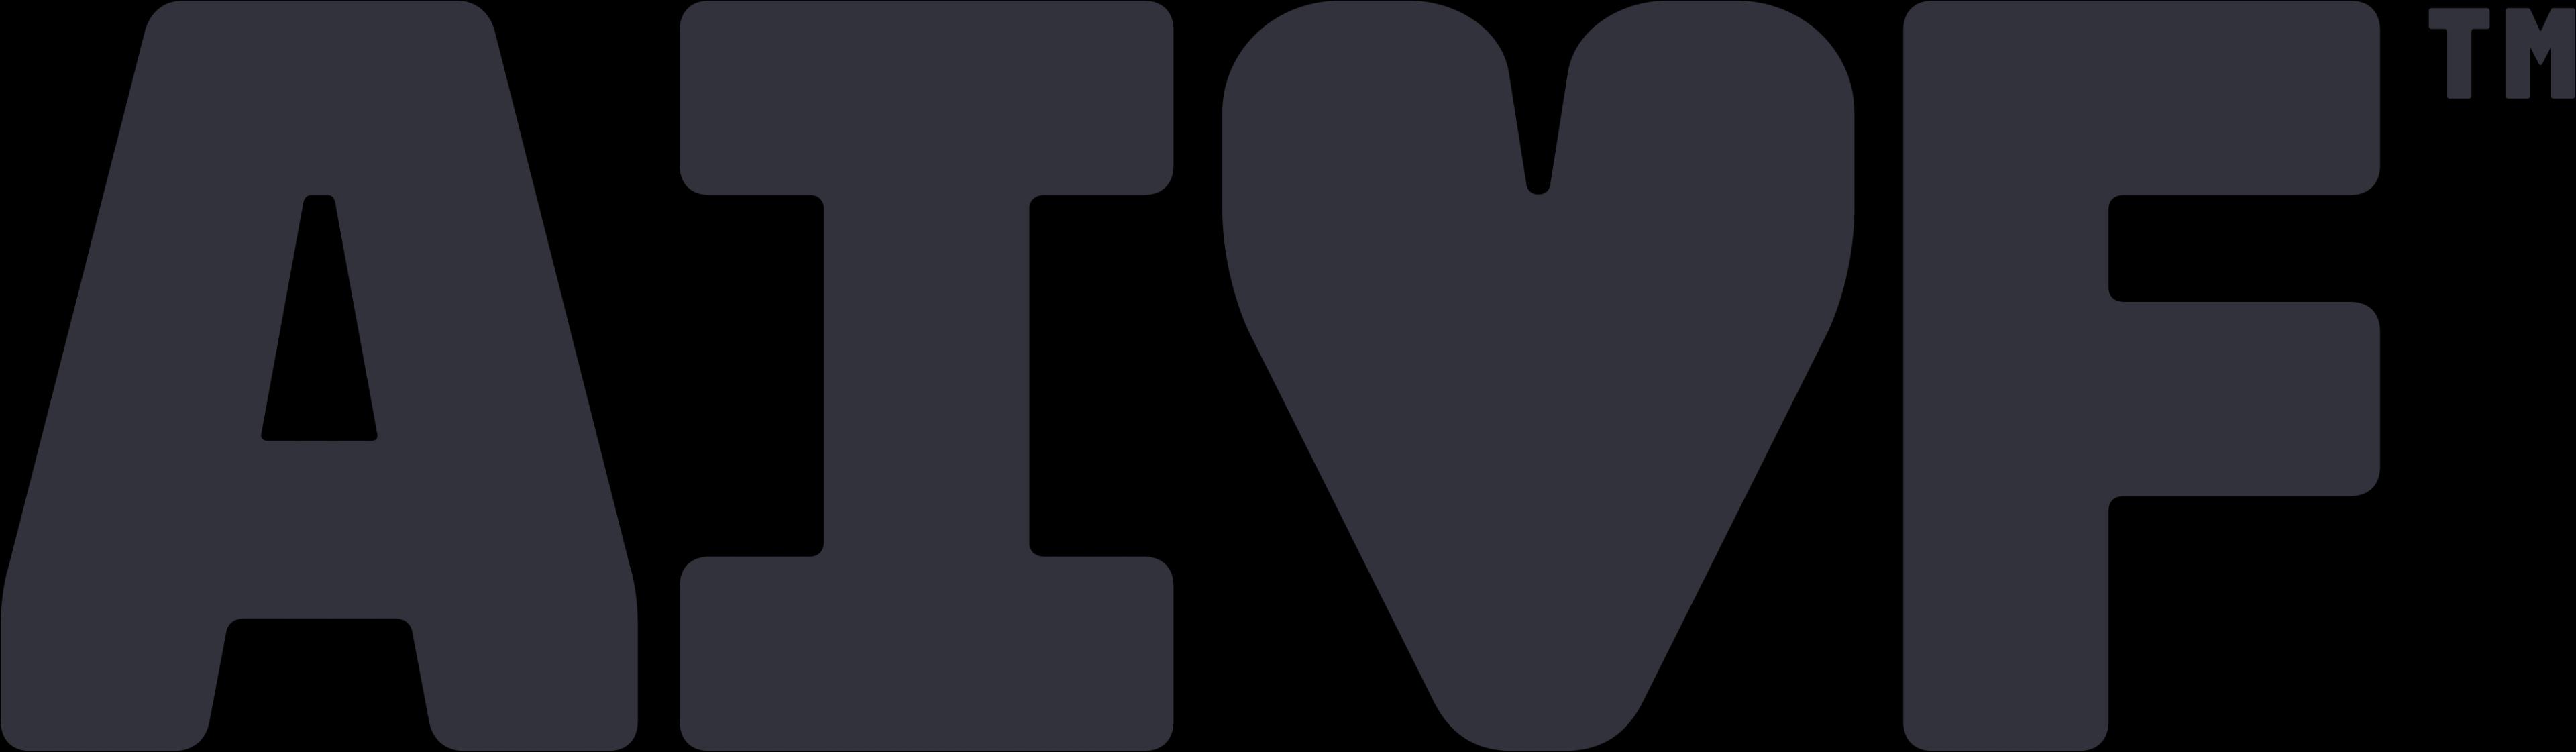 AiVF_logo